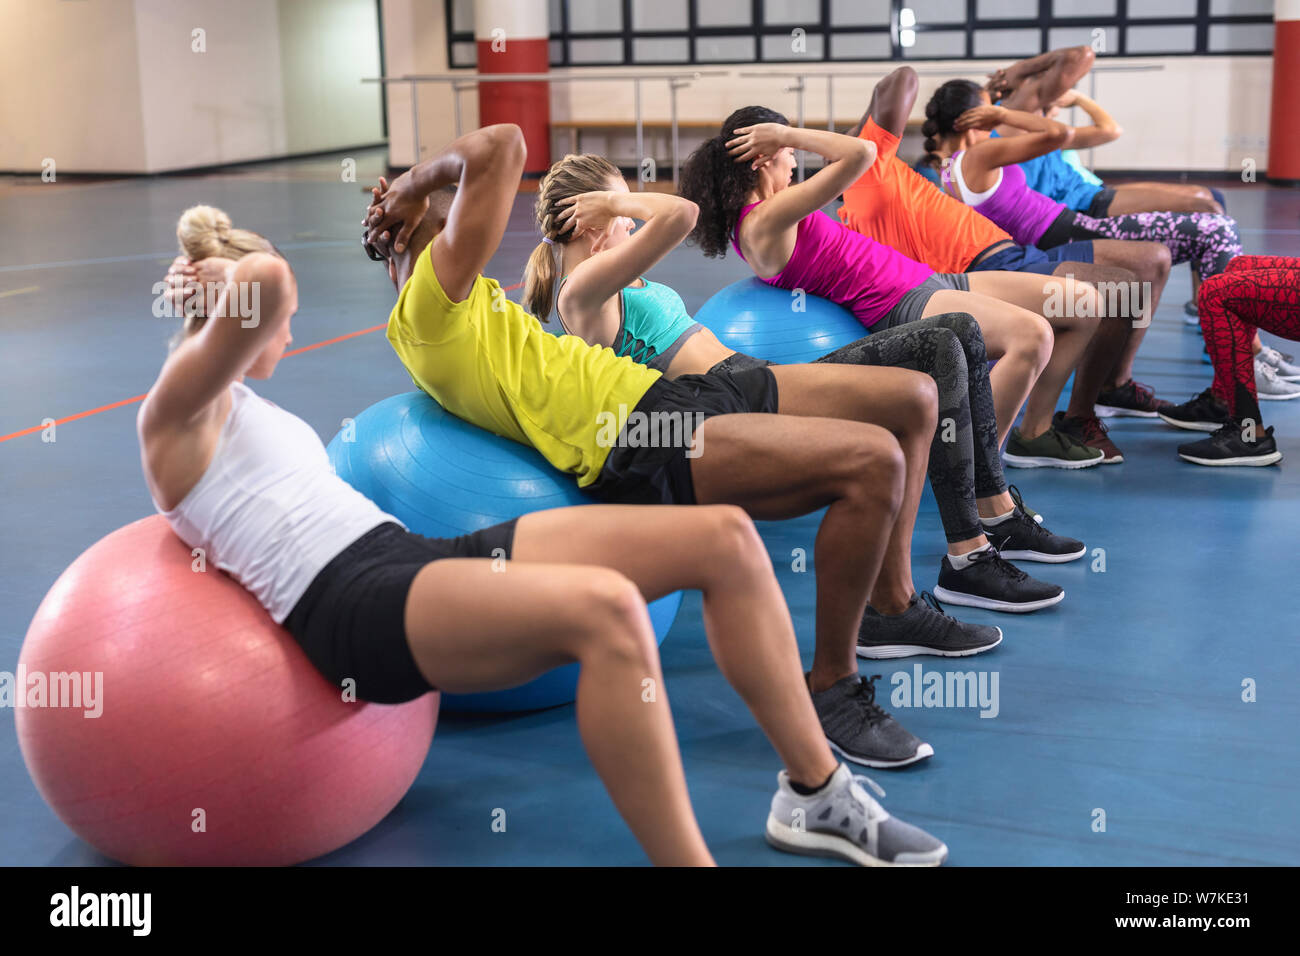 Les formateurs formation des personnes pour exécuter yoga sur boule d'exercice Banque D'Images